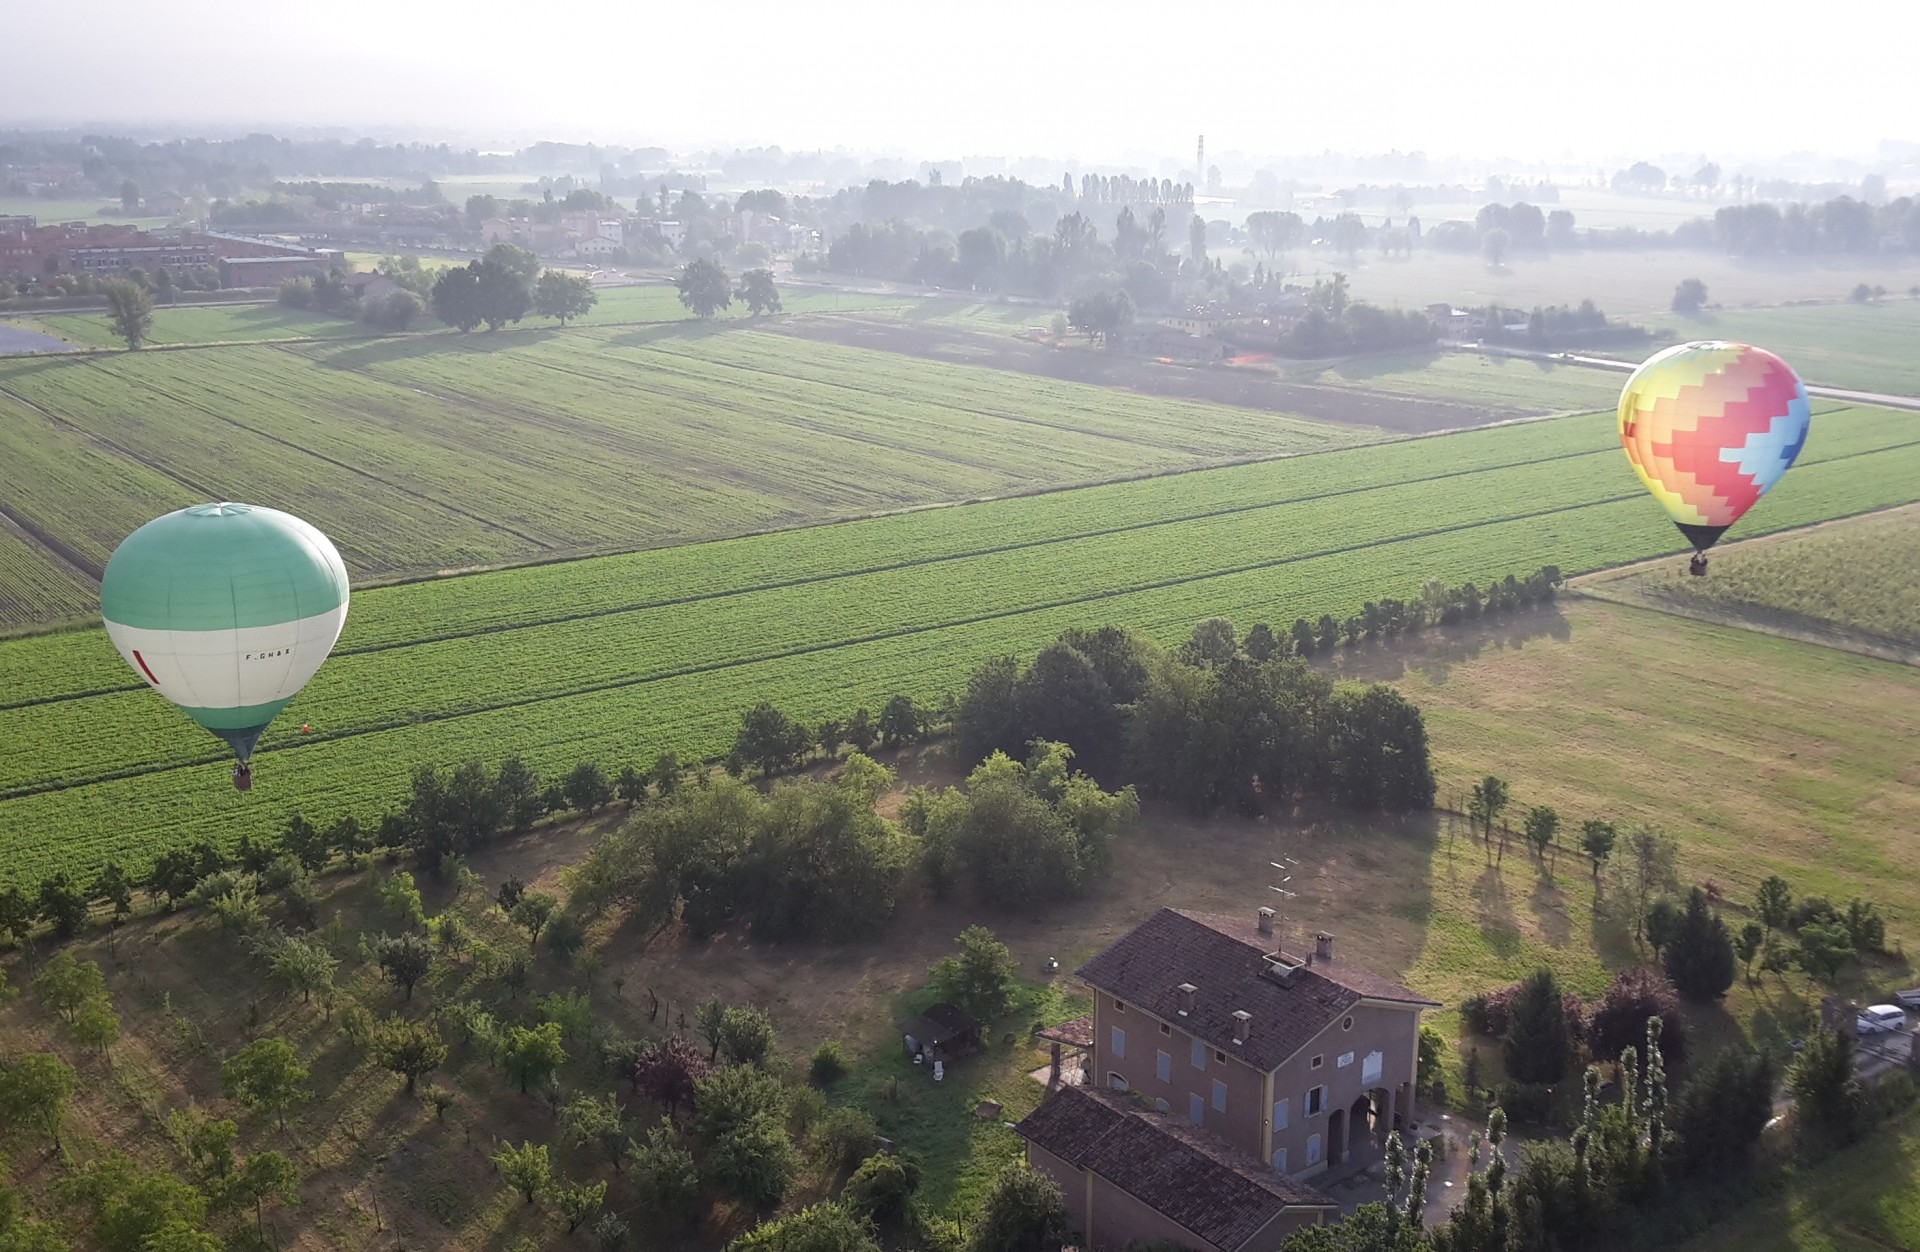 Hot air balloon flight in Reggio Emilia